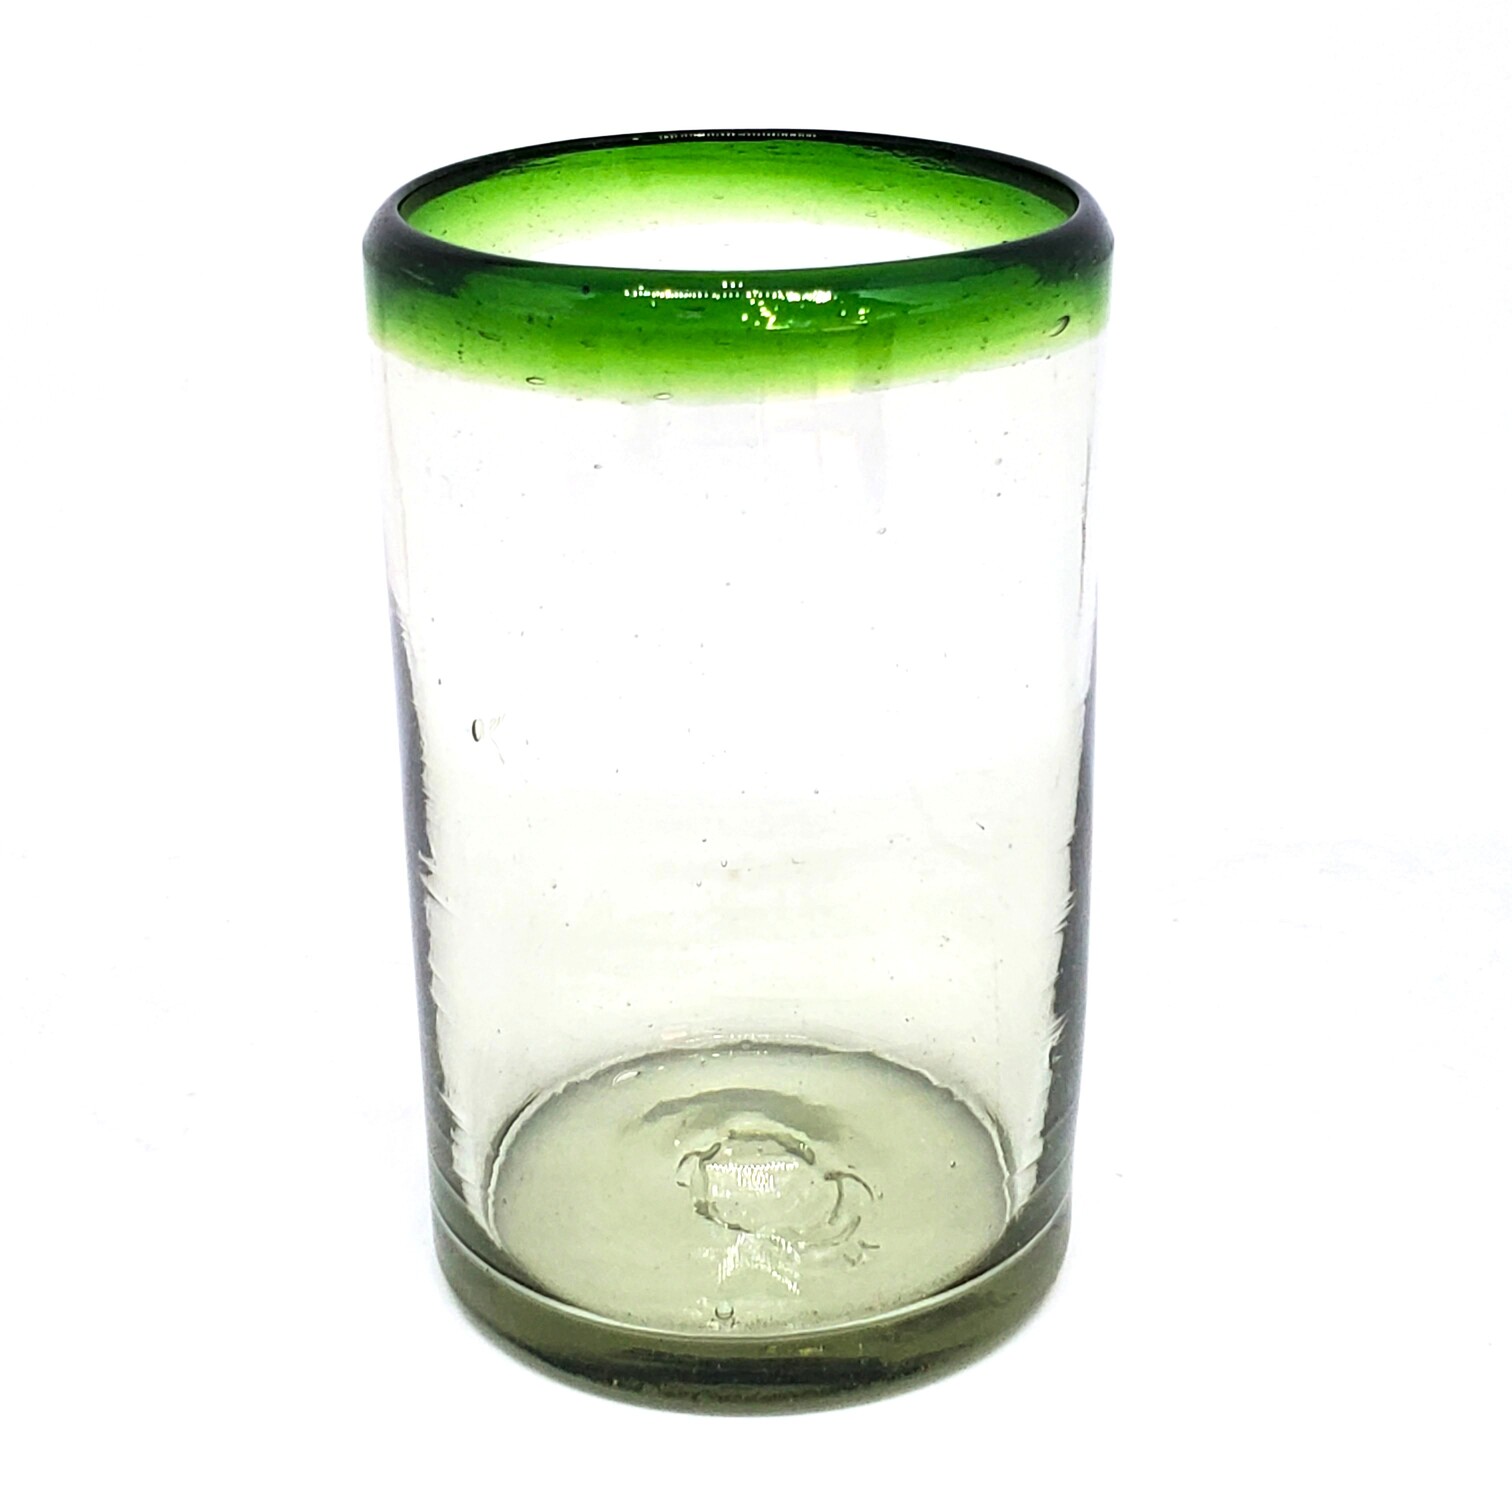 Vasos de Vidrio Soplado / Juego de 6 vasos grandes con borde verde esmeralda / Éstos artesanales vasos le darán un toque clásico a su bebida favorita.